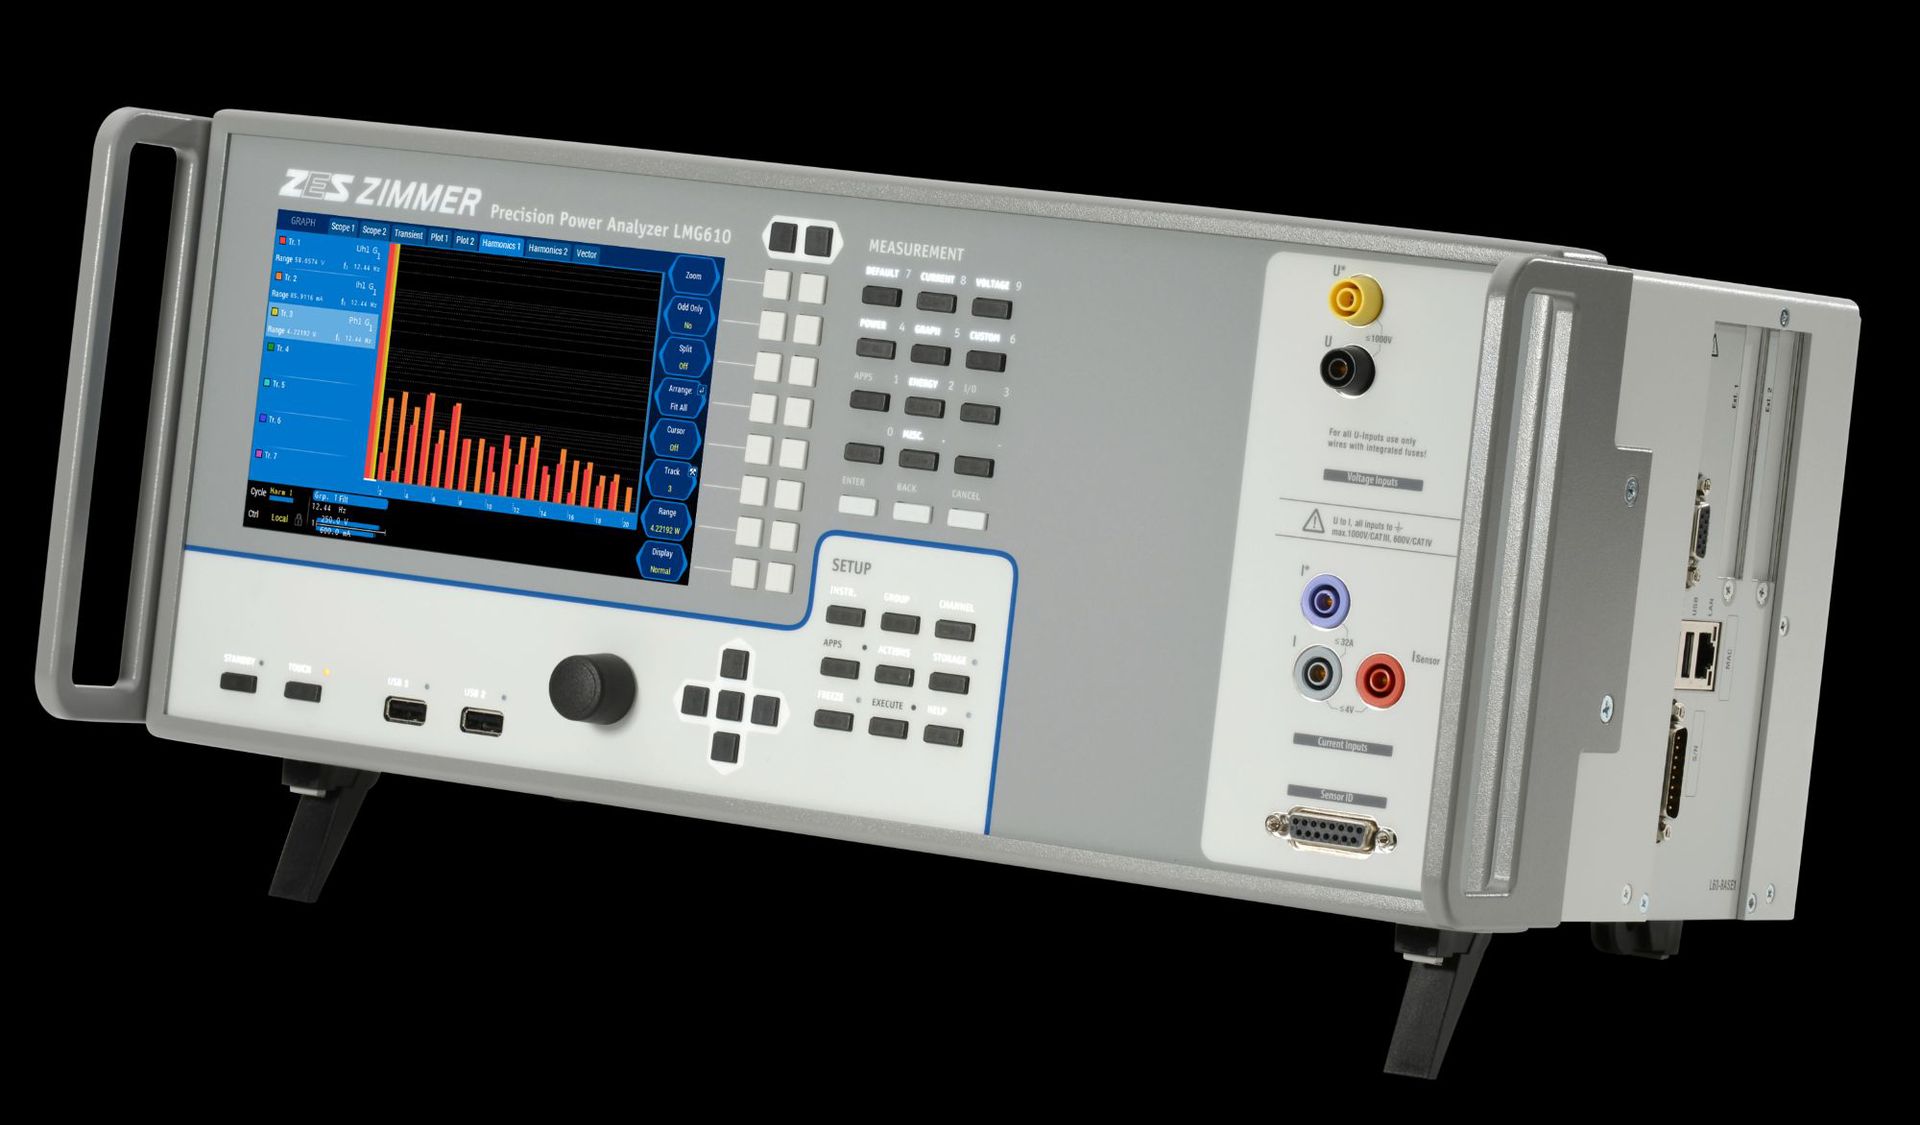 德国便携式高频直流功率分析仪LMG610